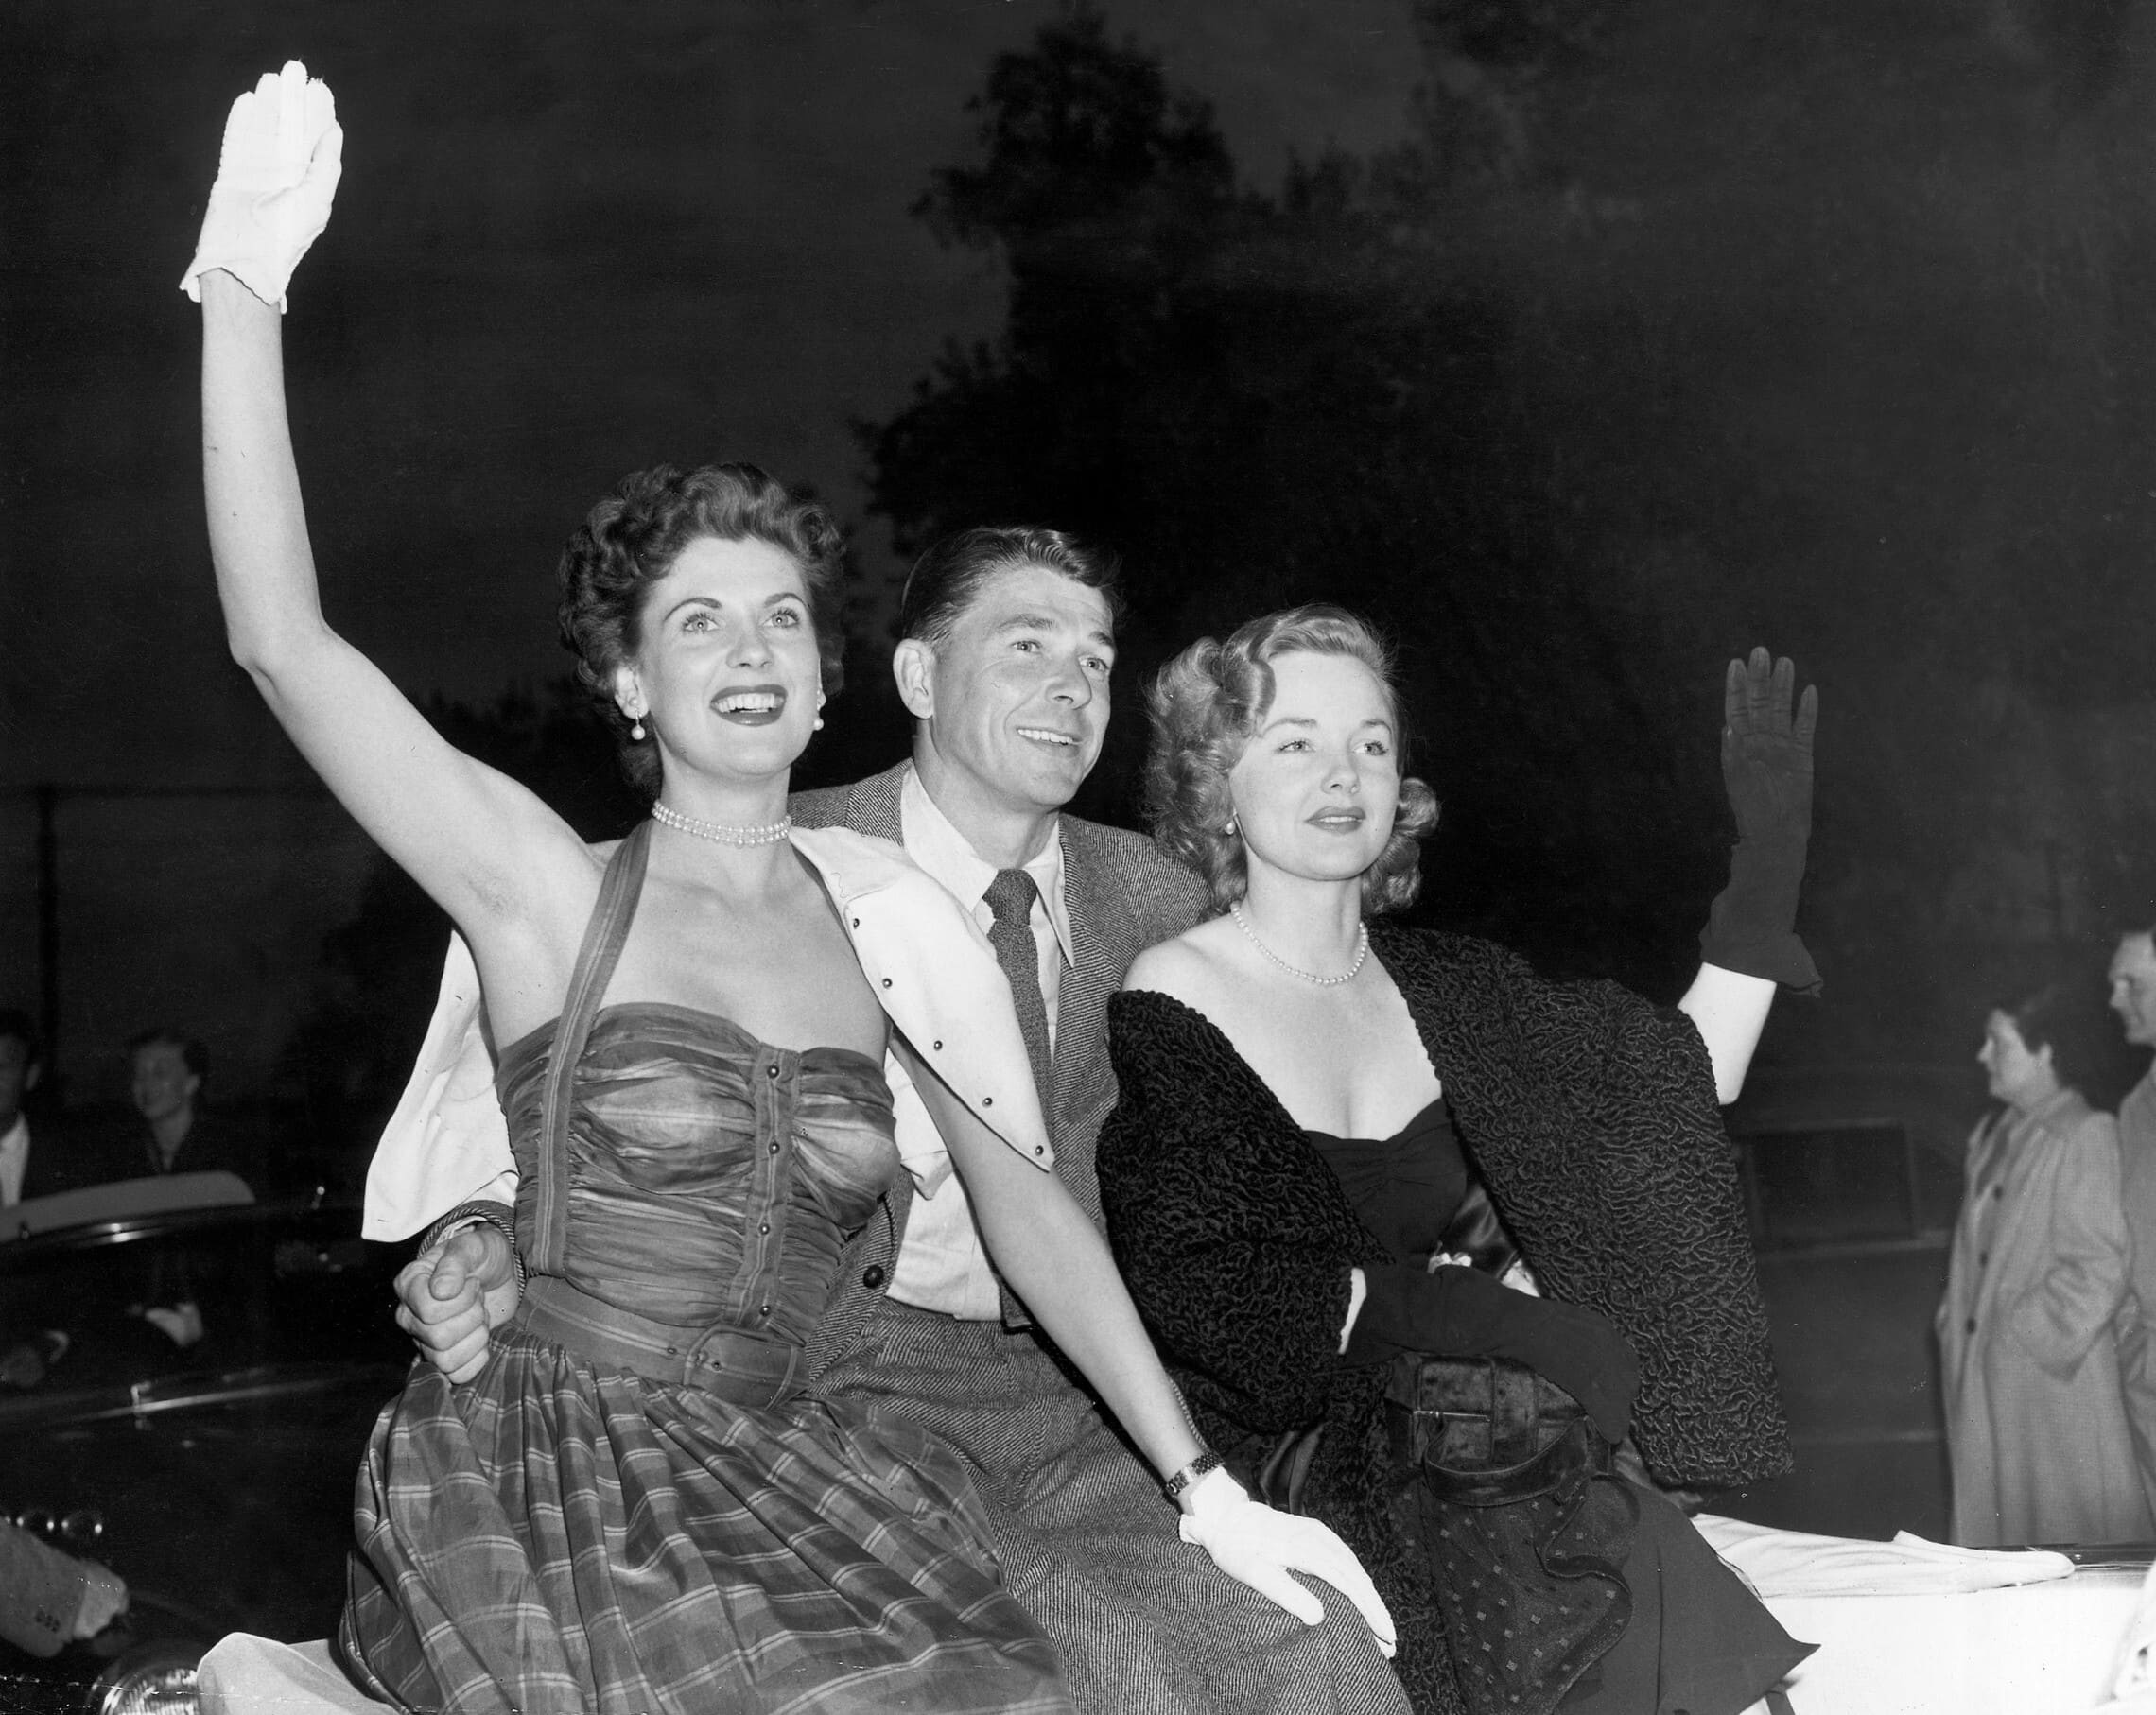 השחקנית ונדה הנדריקס (מימין) לצד רונלד רייגן, קליפורניה, 23 ביוני 1950 (צילום: AP)